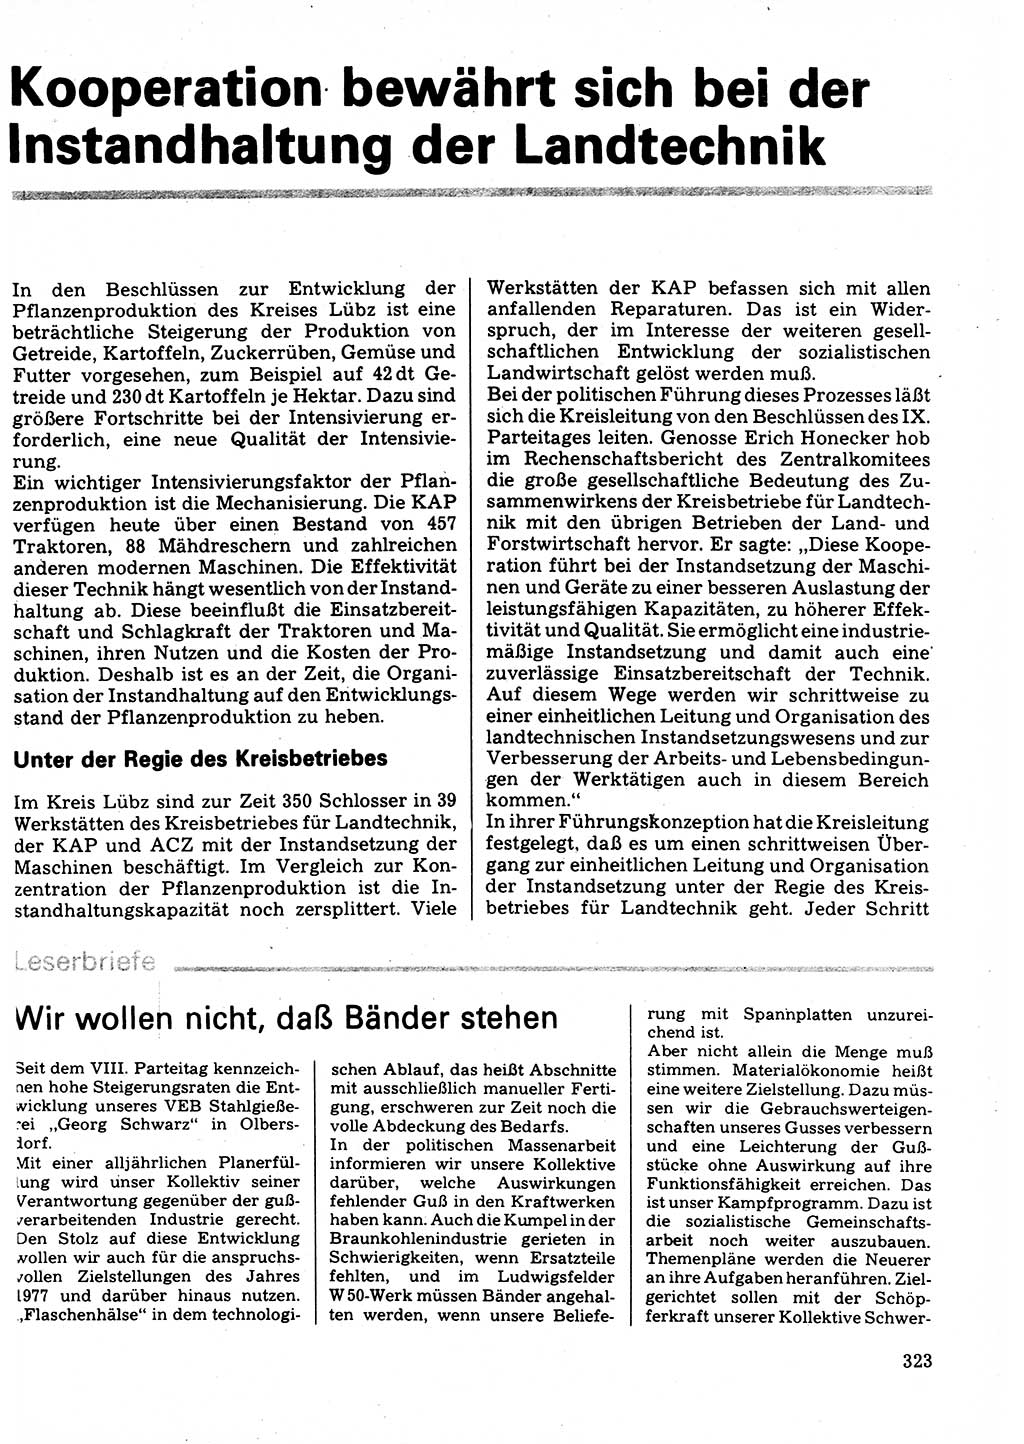 Neuer Weg (NW), Organ des Zentralkomitees (ZK) der SED (Sozialistische Einheitspartei Deutschlands) für Fragen des Parteilebens, 32. Jahrgang [Deutsche Demokratische Republik (DDR)] 1977, Seite 323 (NW ZK SED DDR 1977, S. 323)